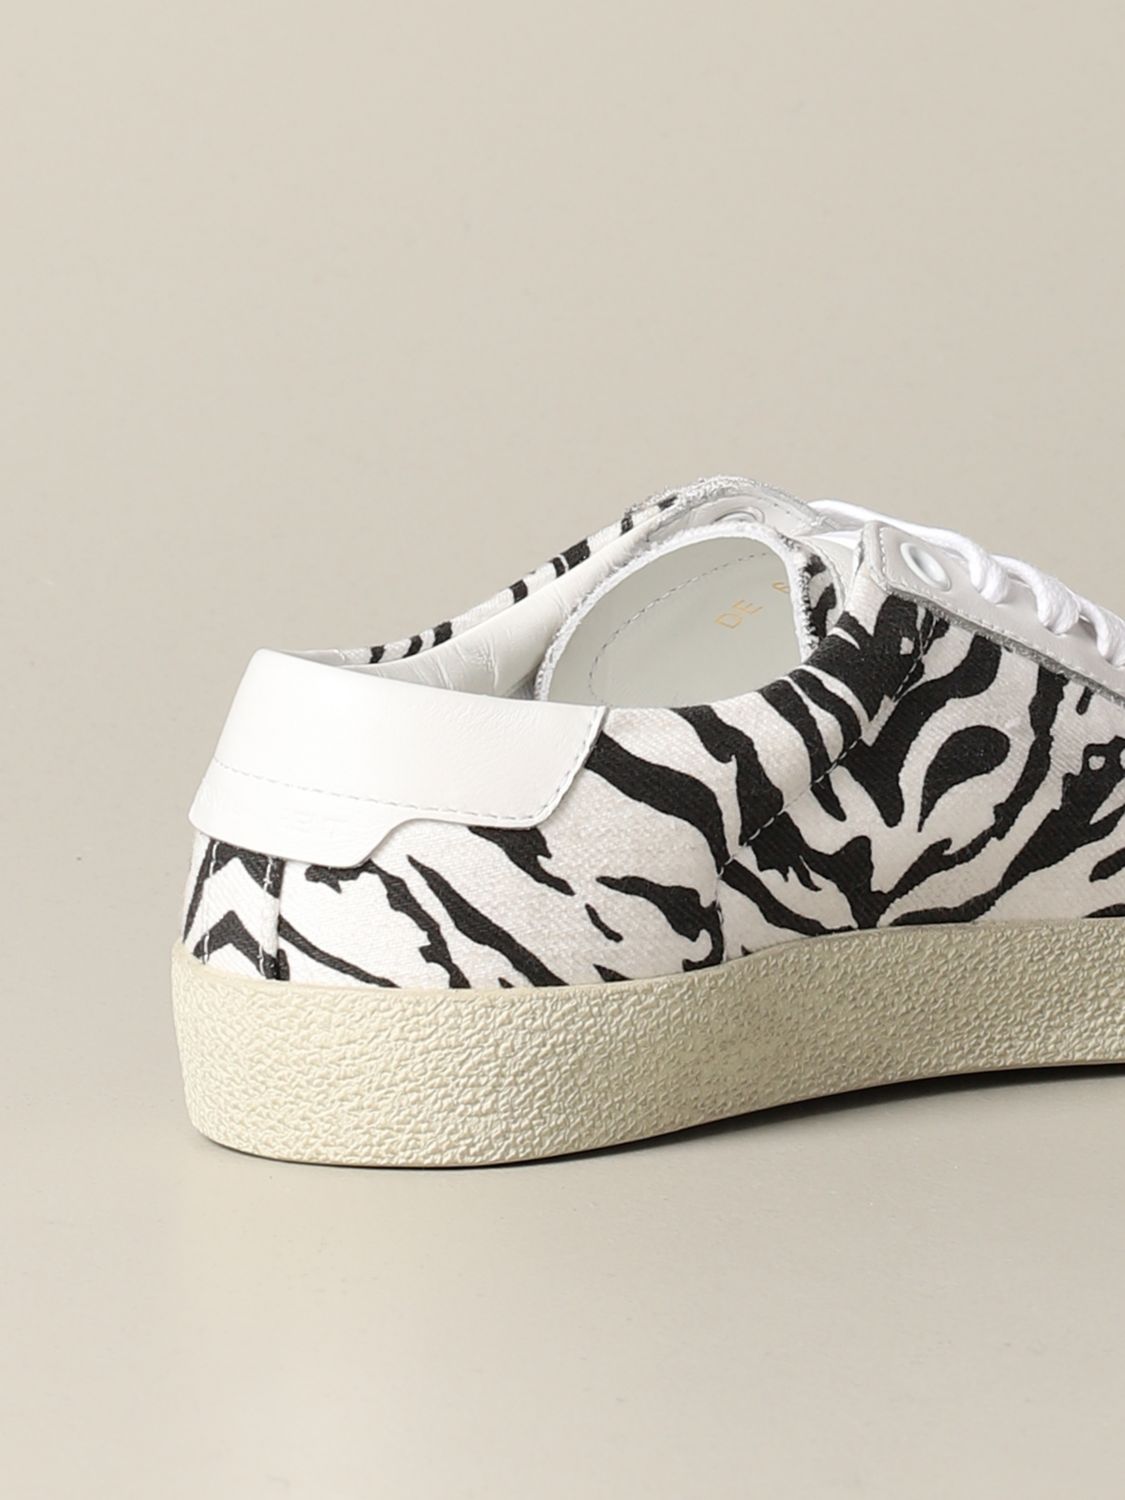 Saint Laurent sneakers in zebra print 